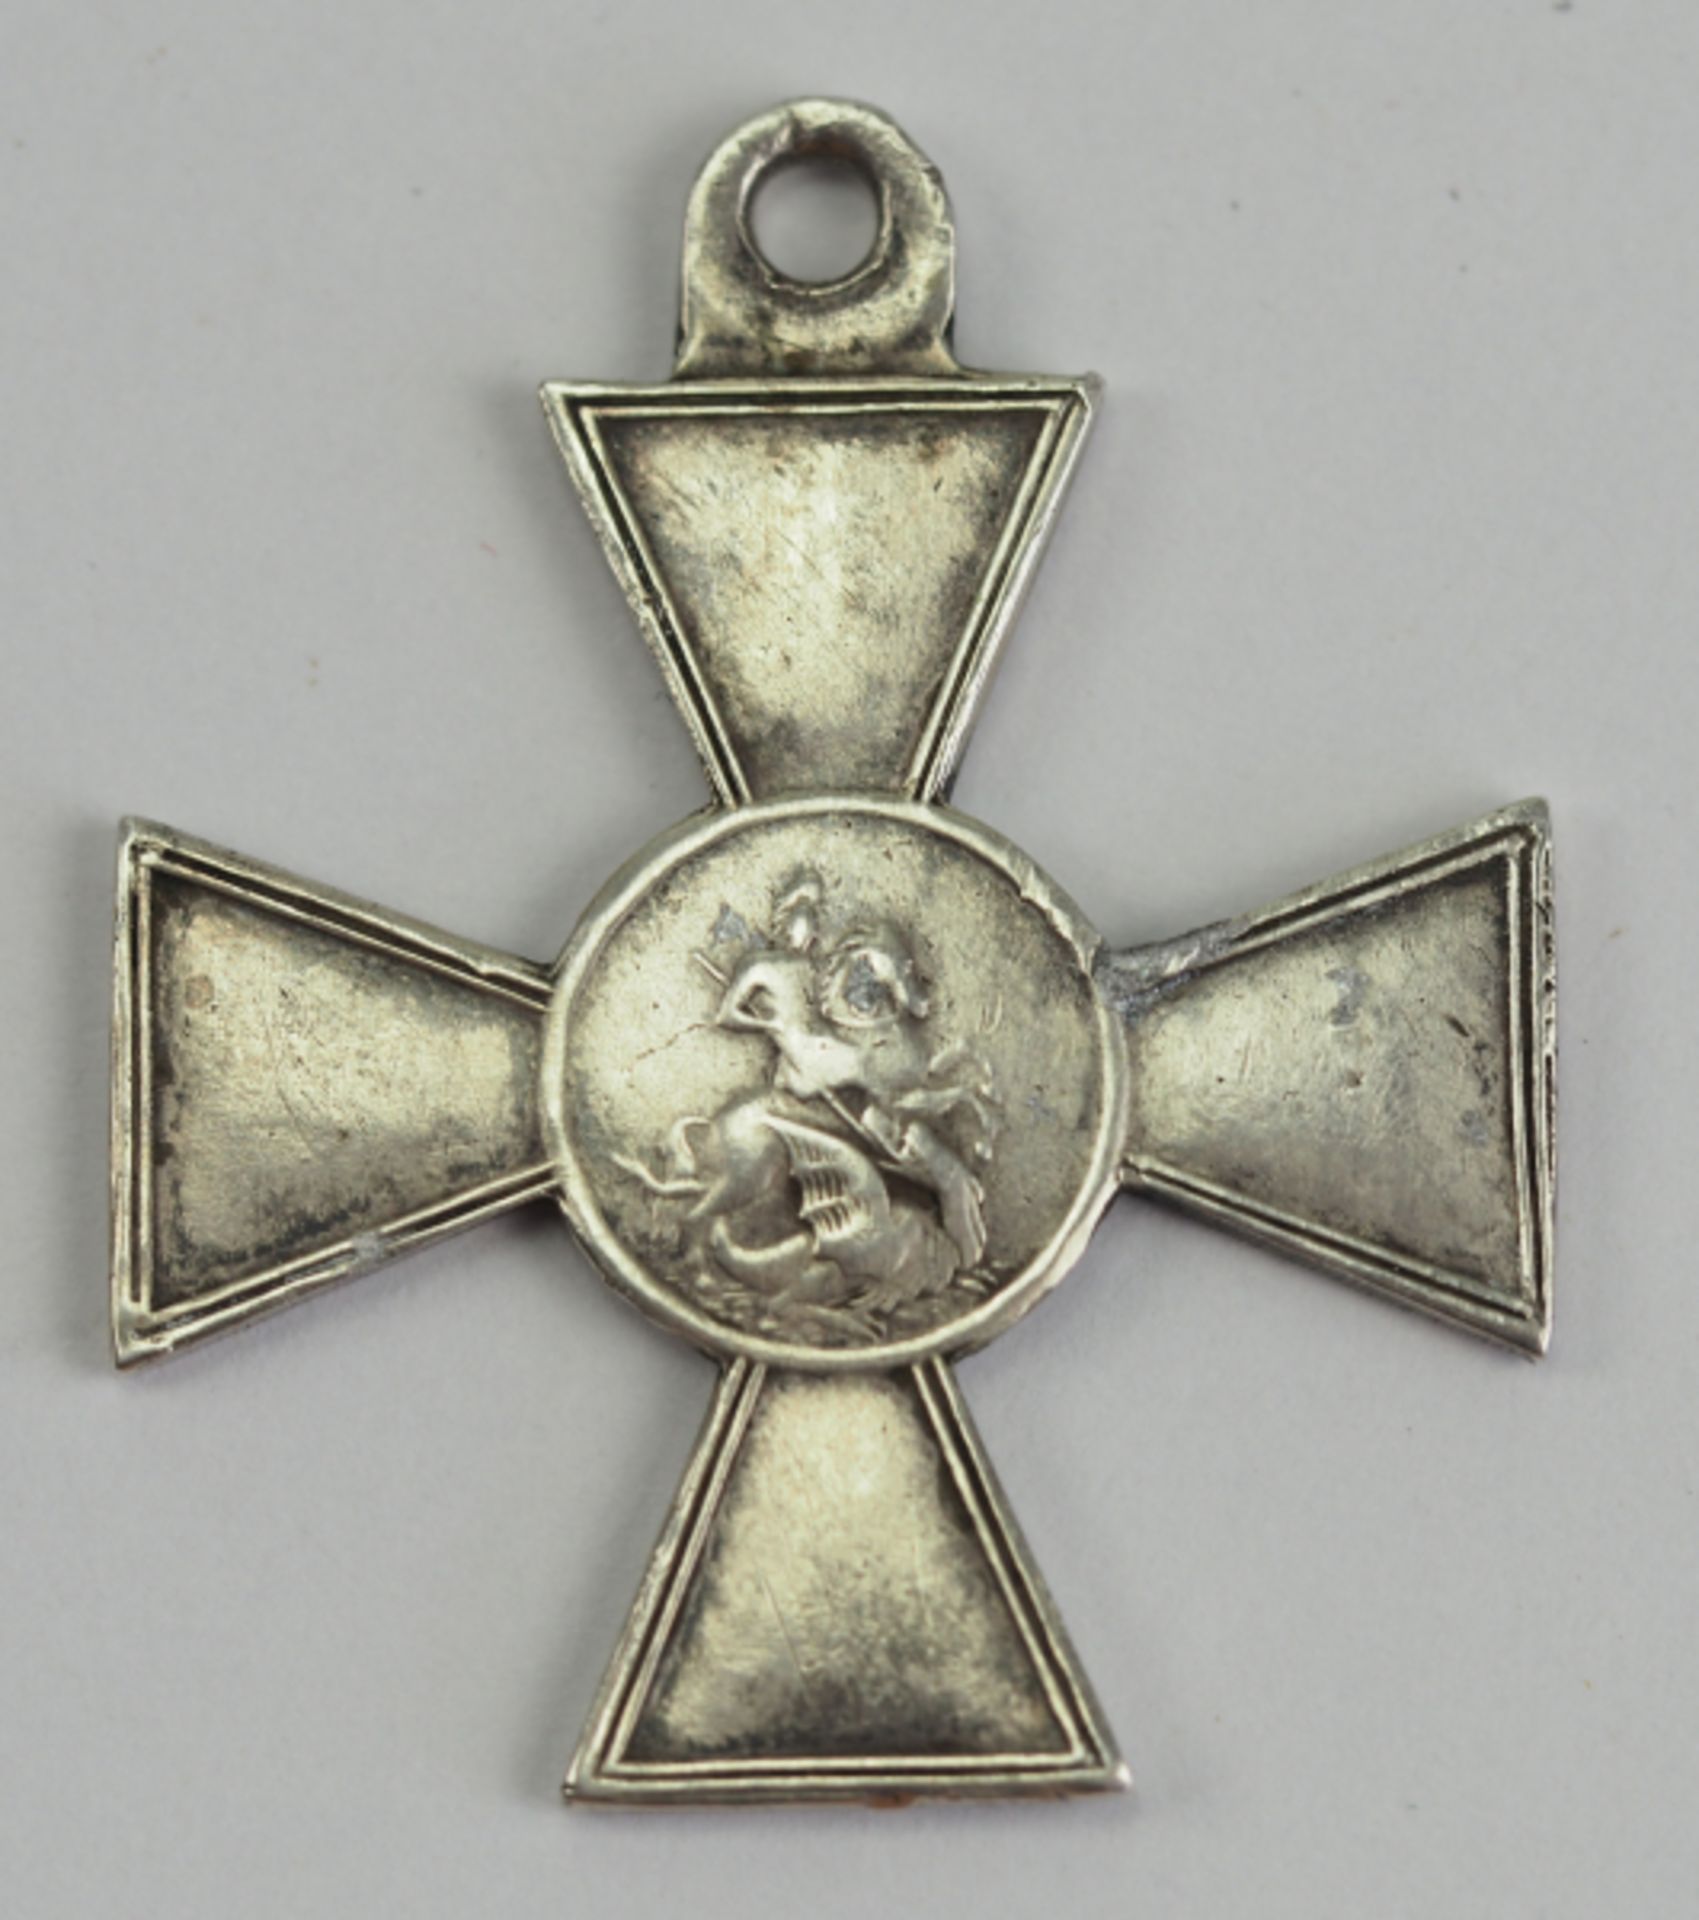 Russland: St. Georgs Orden, Soldatenkreuz, 3. Klasse.Silber, mit geschlagener Matrikelnummer 55 80. - Bild 2 aus 2